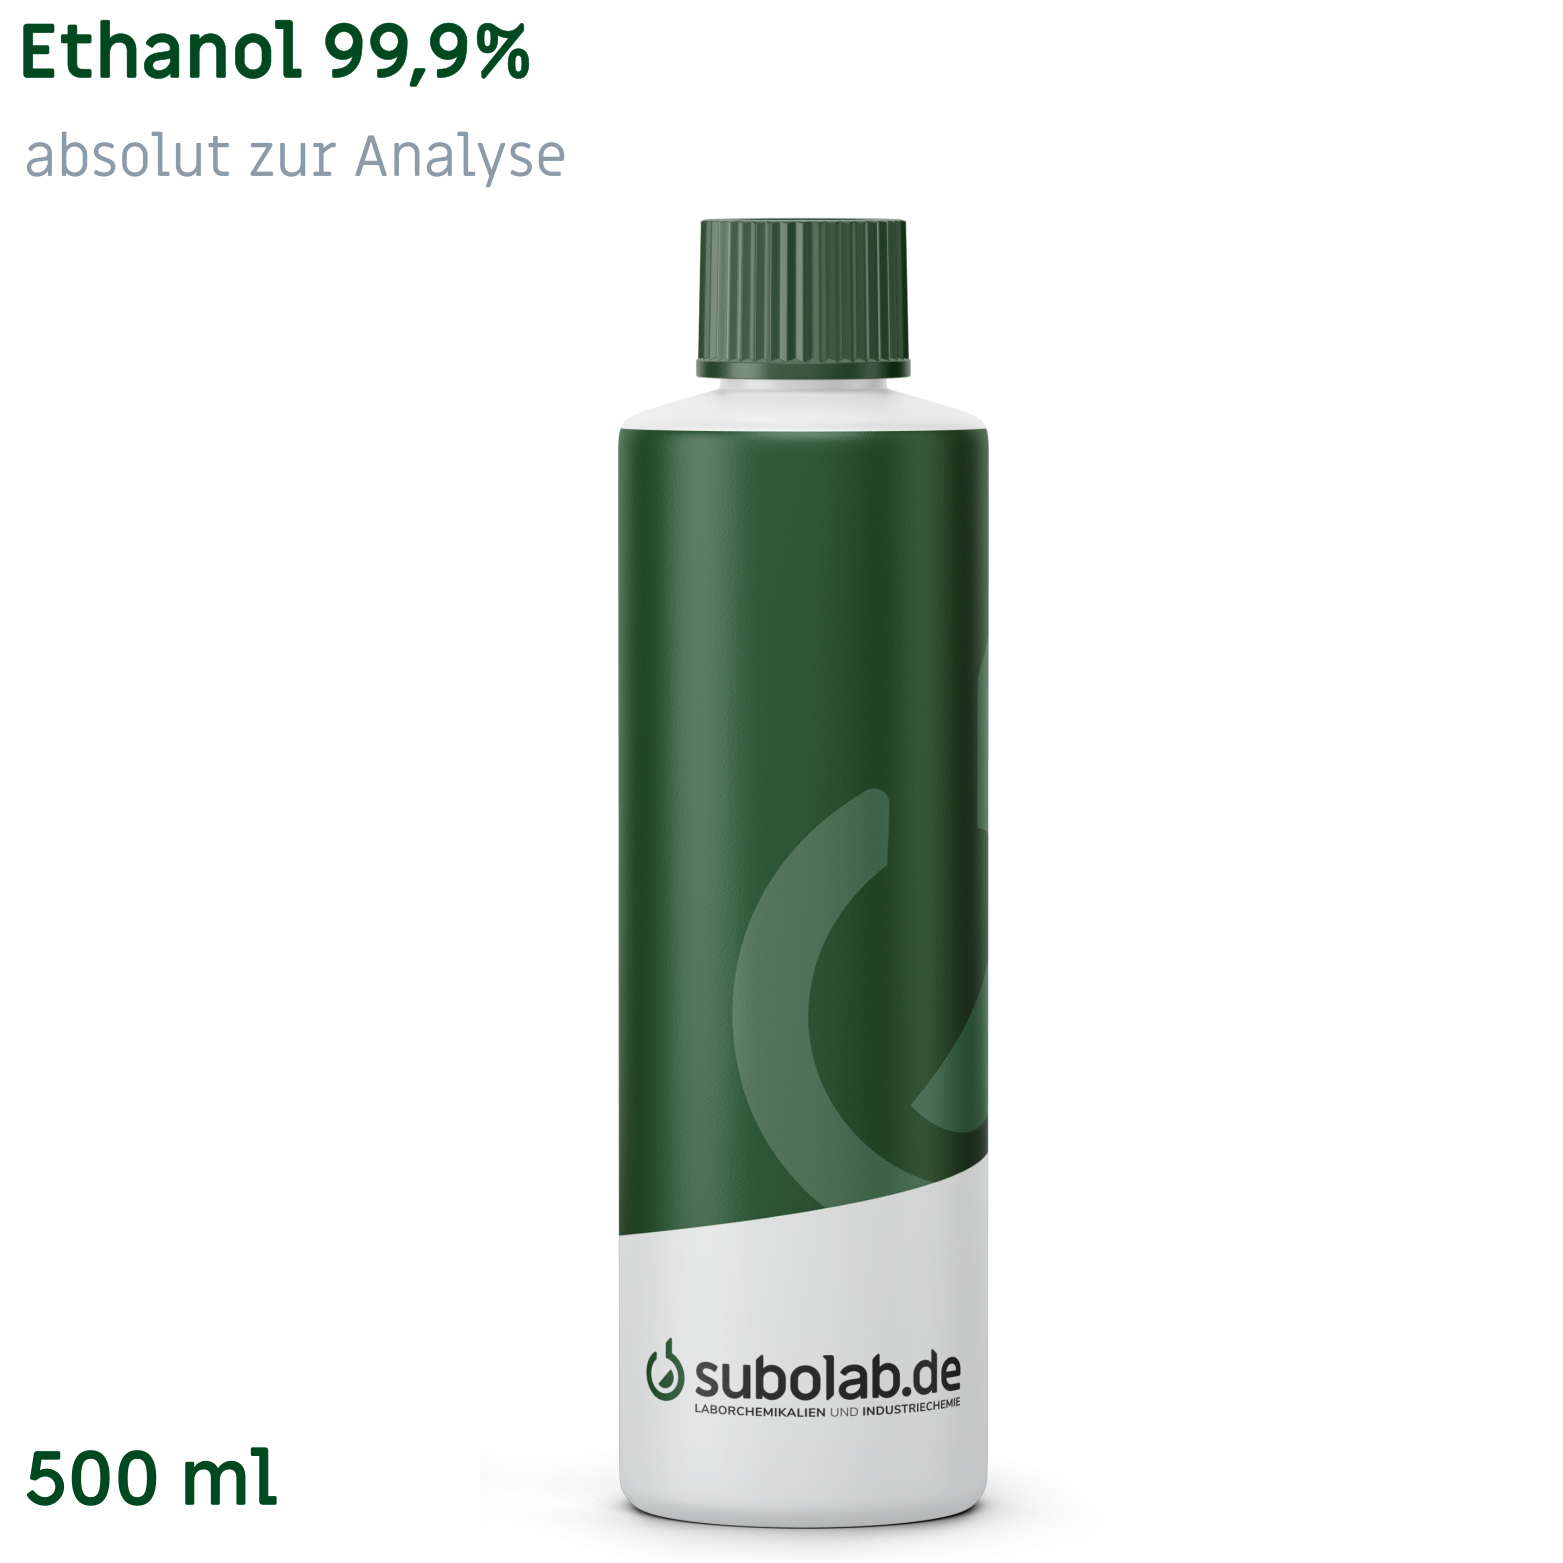 Bild von Ethanol 99,9% absolut zur Analyse (500 ml)